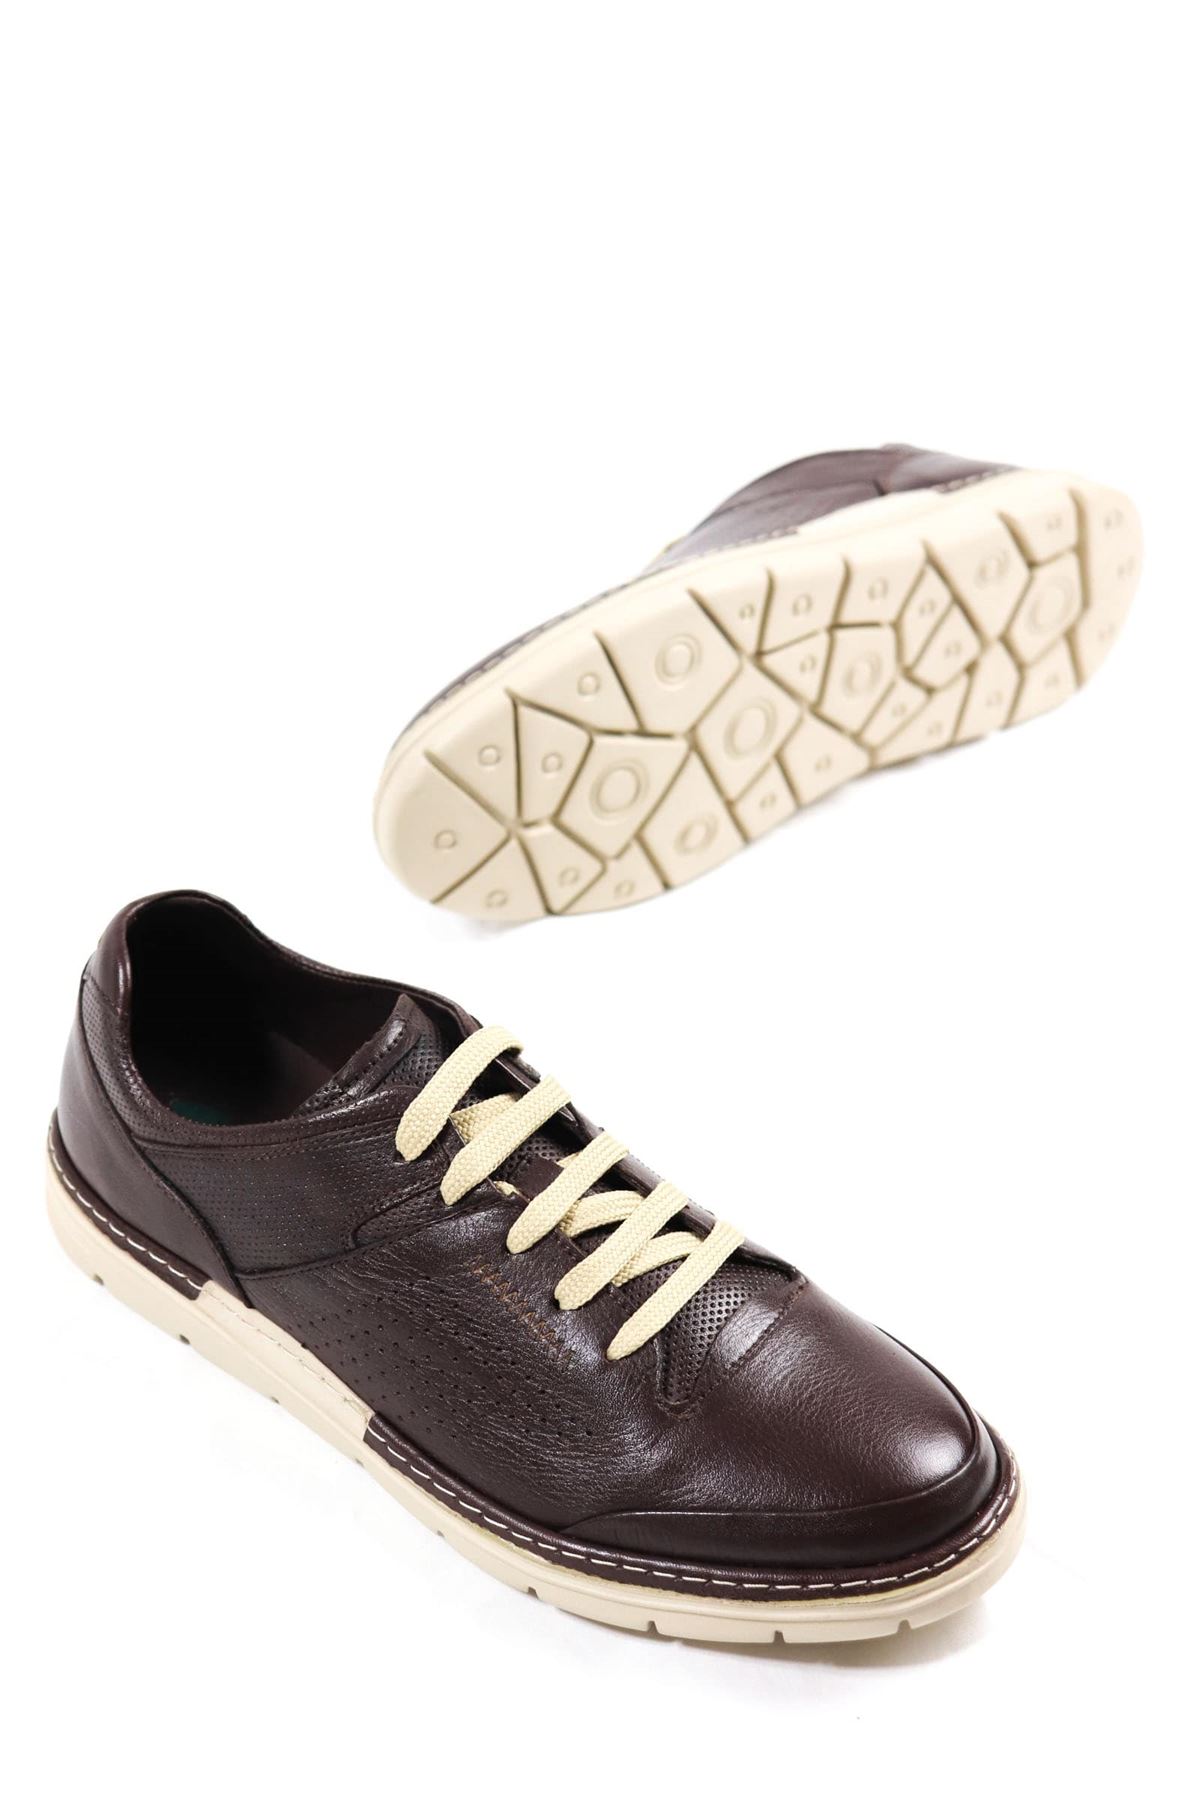 Freefoot - 221979 - İnci Kahverengi Deri Erkek Ayakkabı